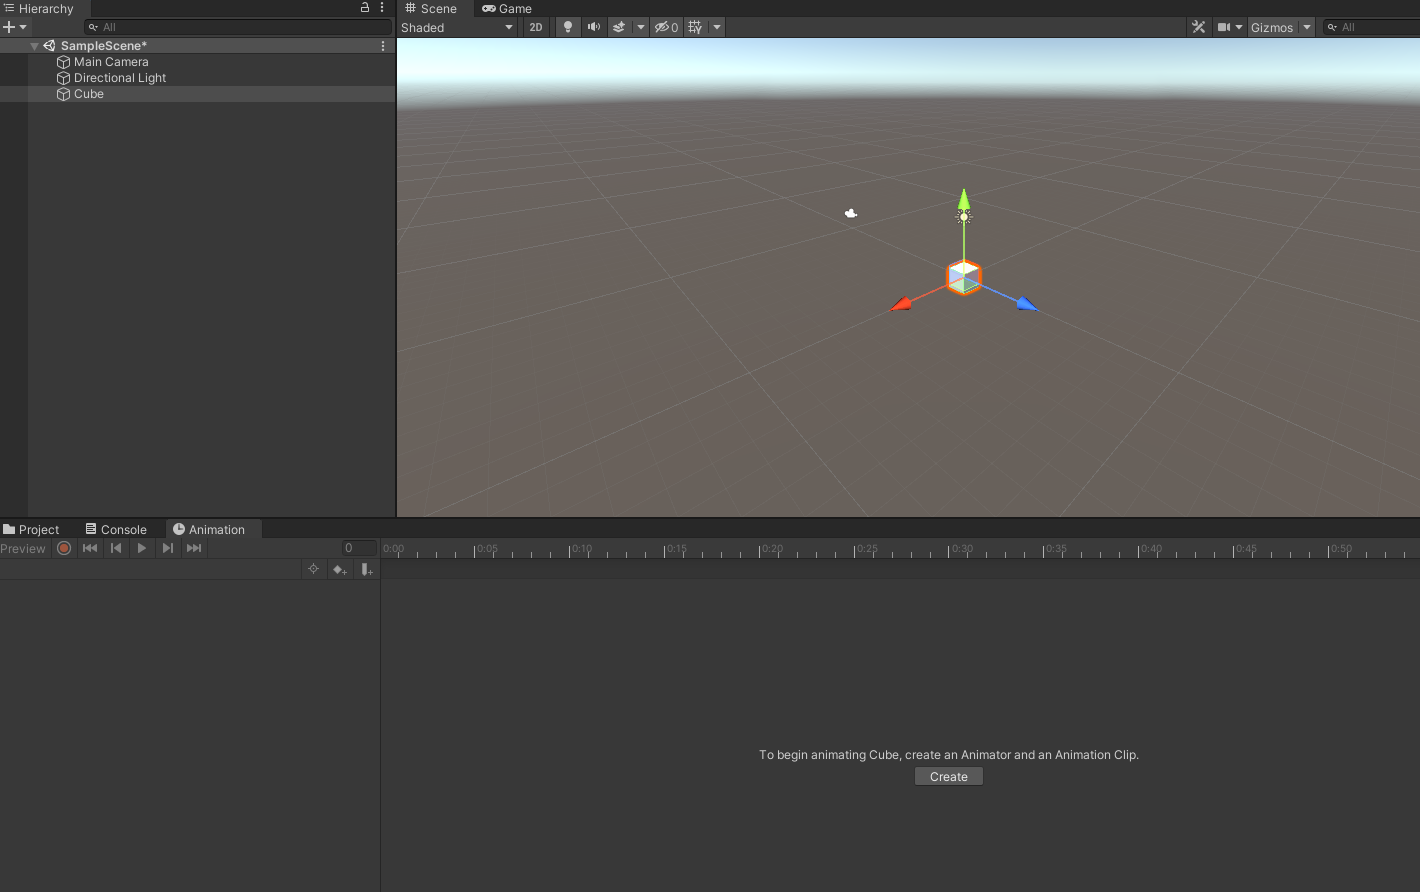 Cómo animar en Unity 3D PASO a PASO